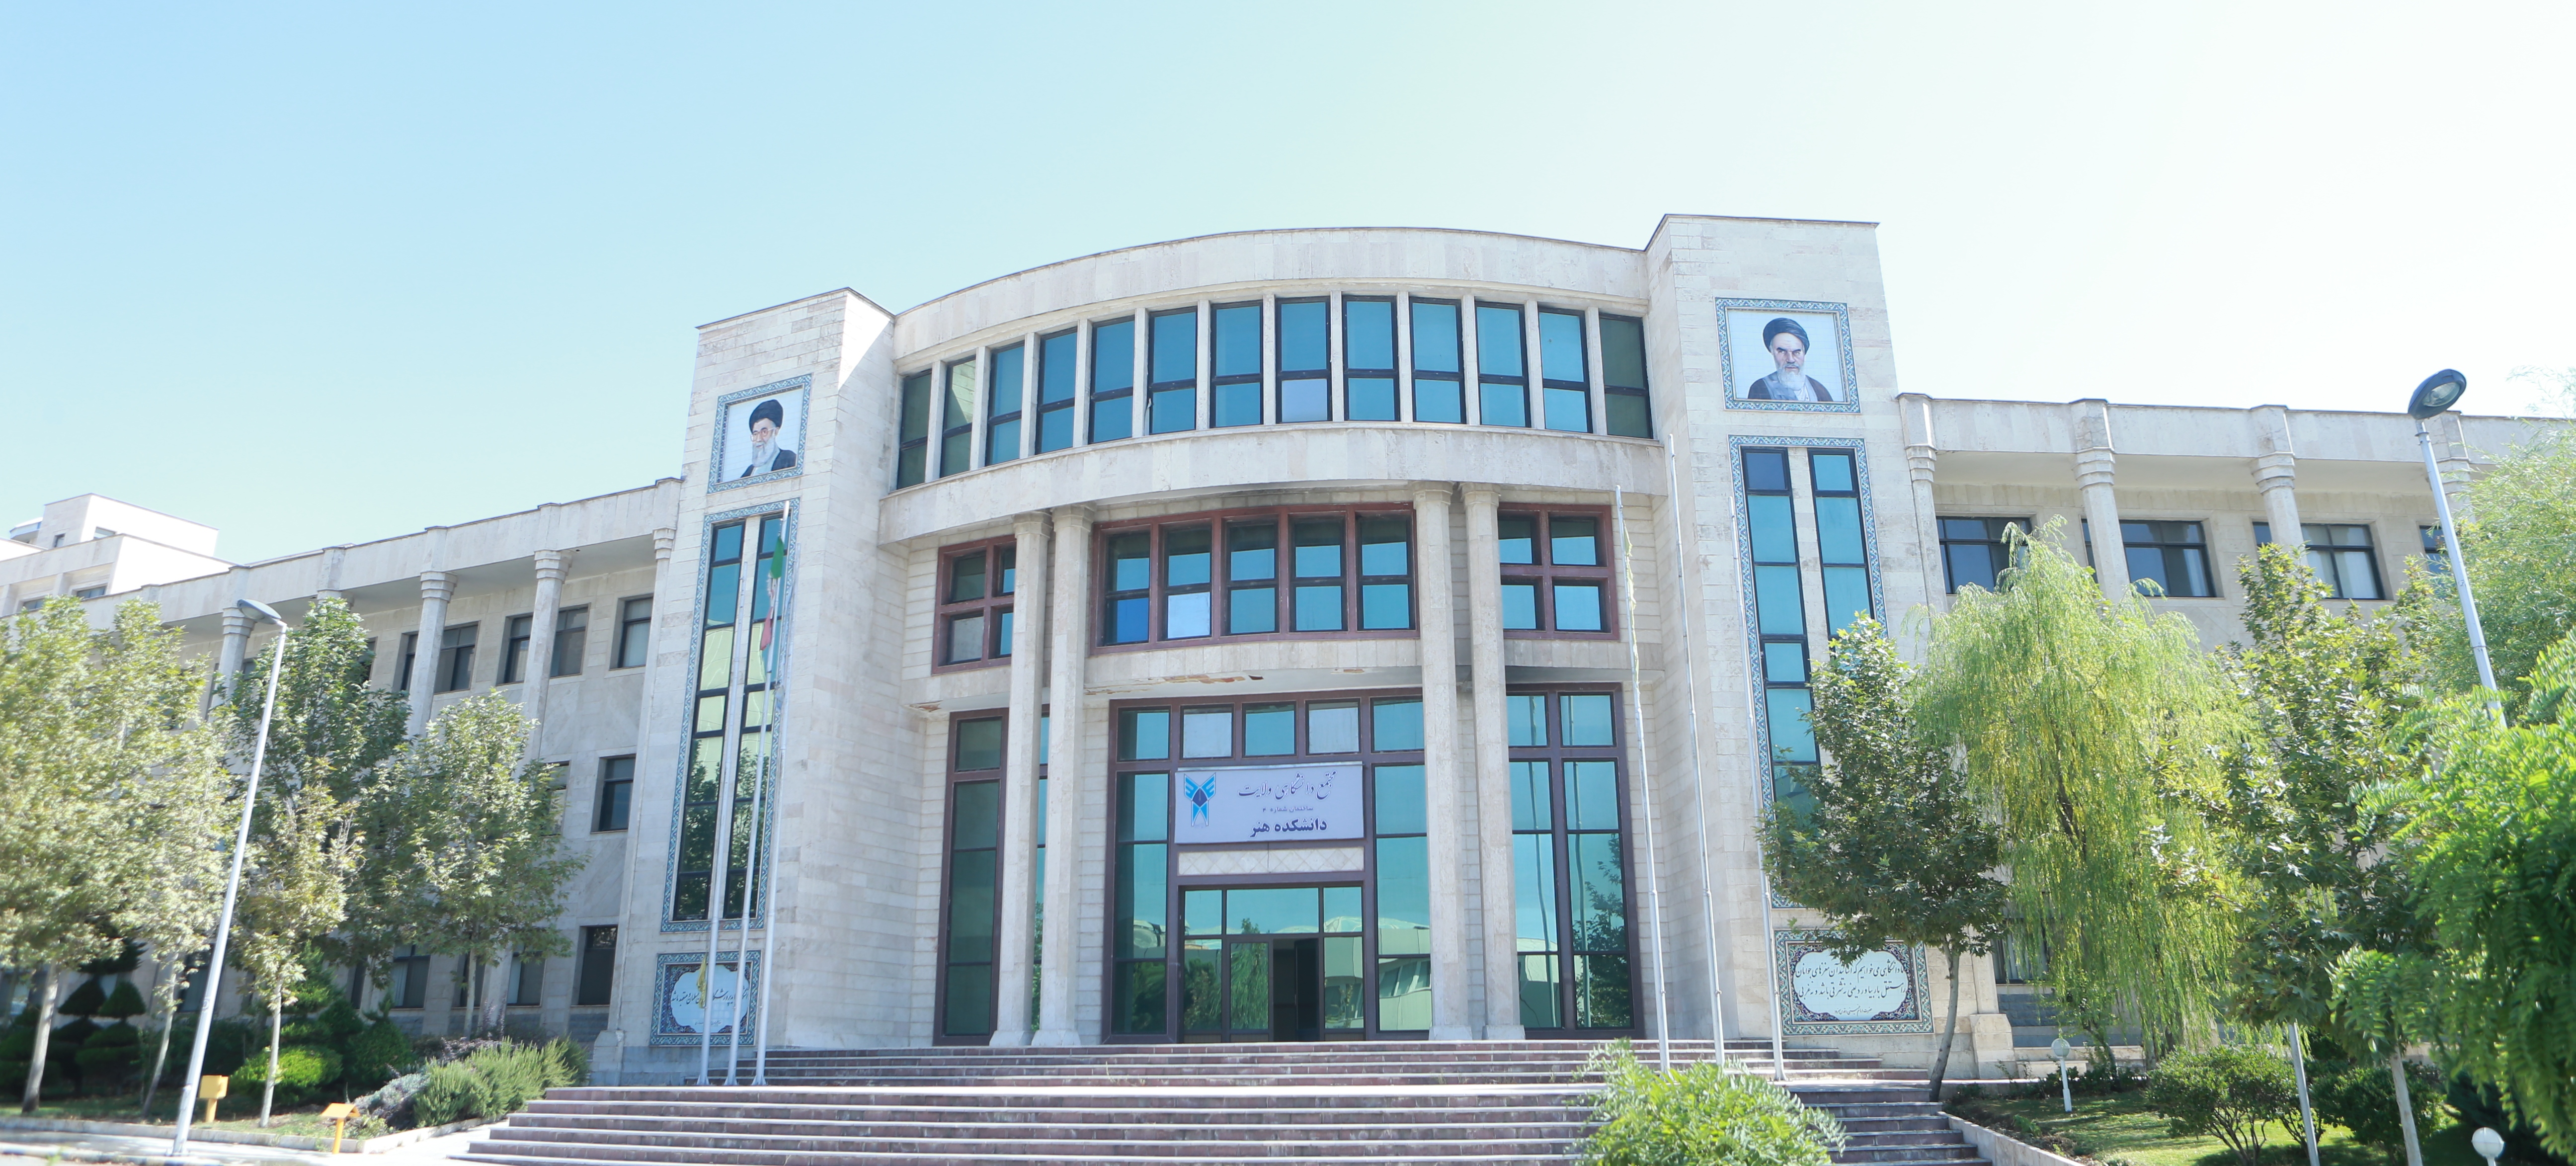 مرکز روانشناسی در تهران
